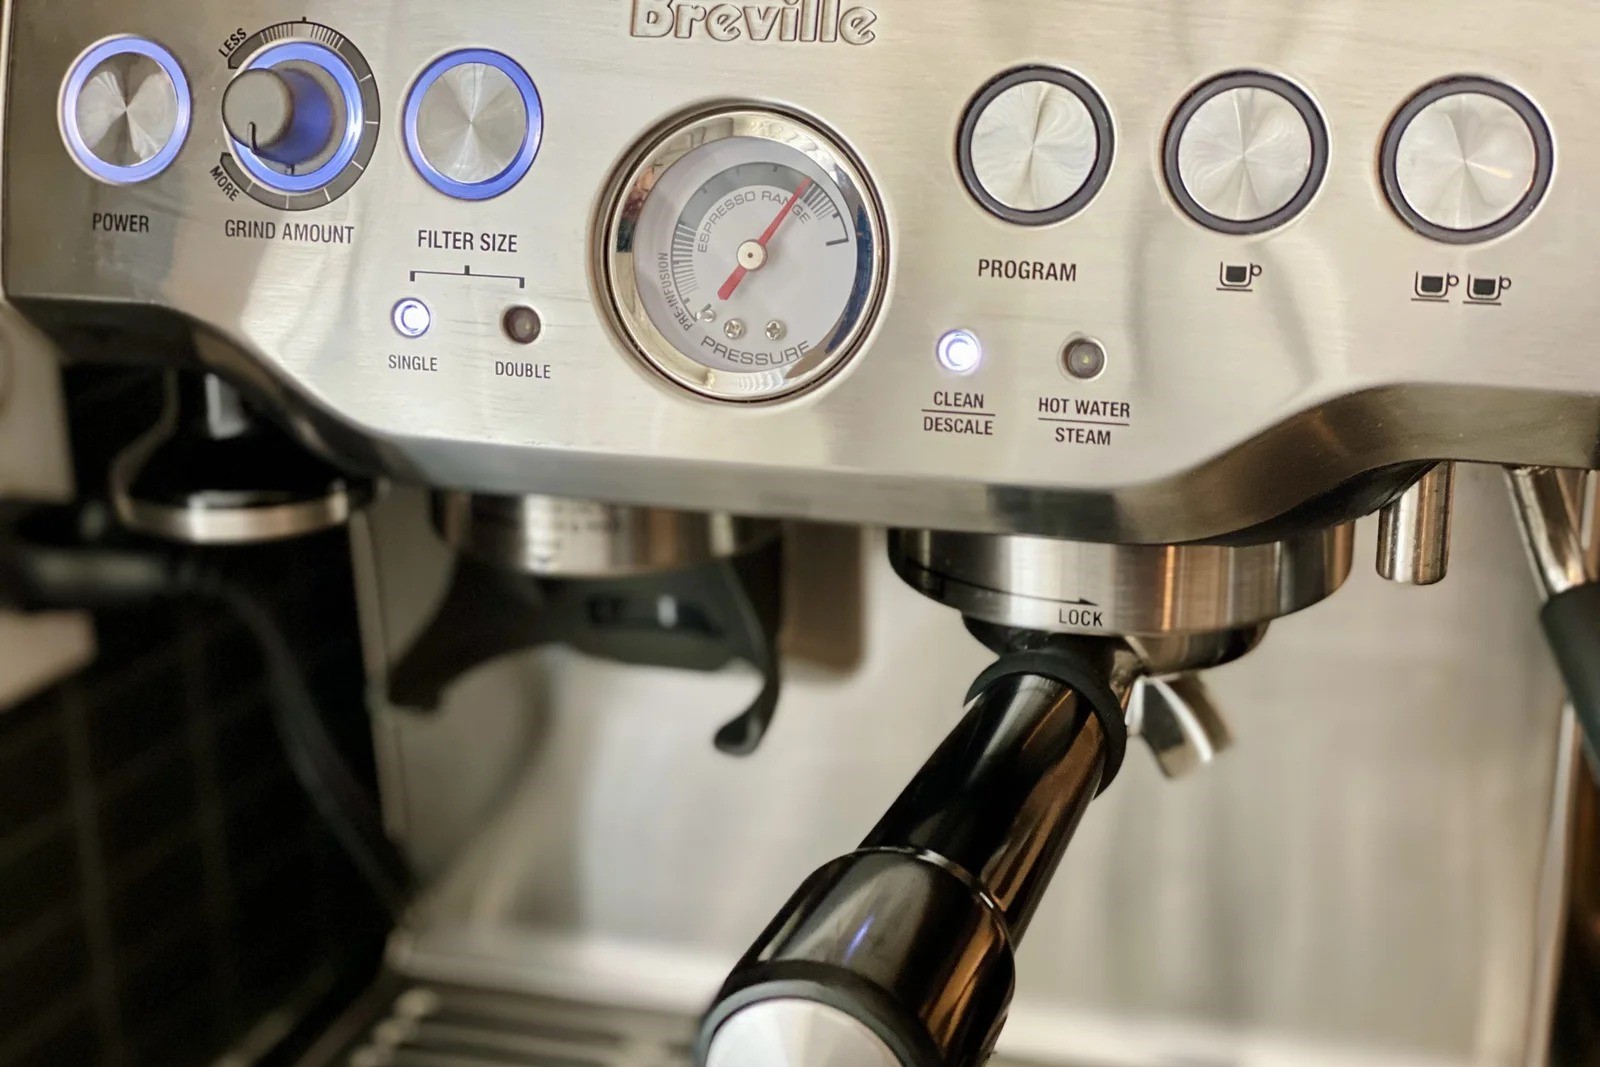 How To Descale Breville Espresso Machine